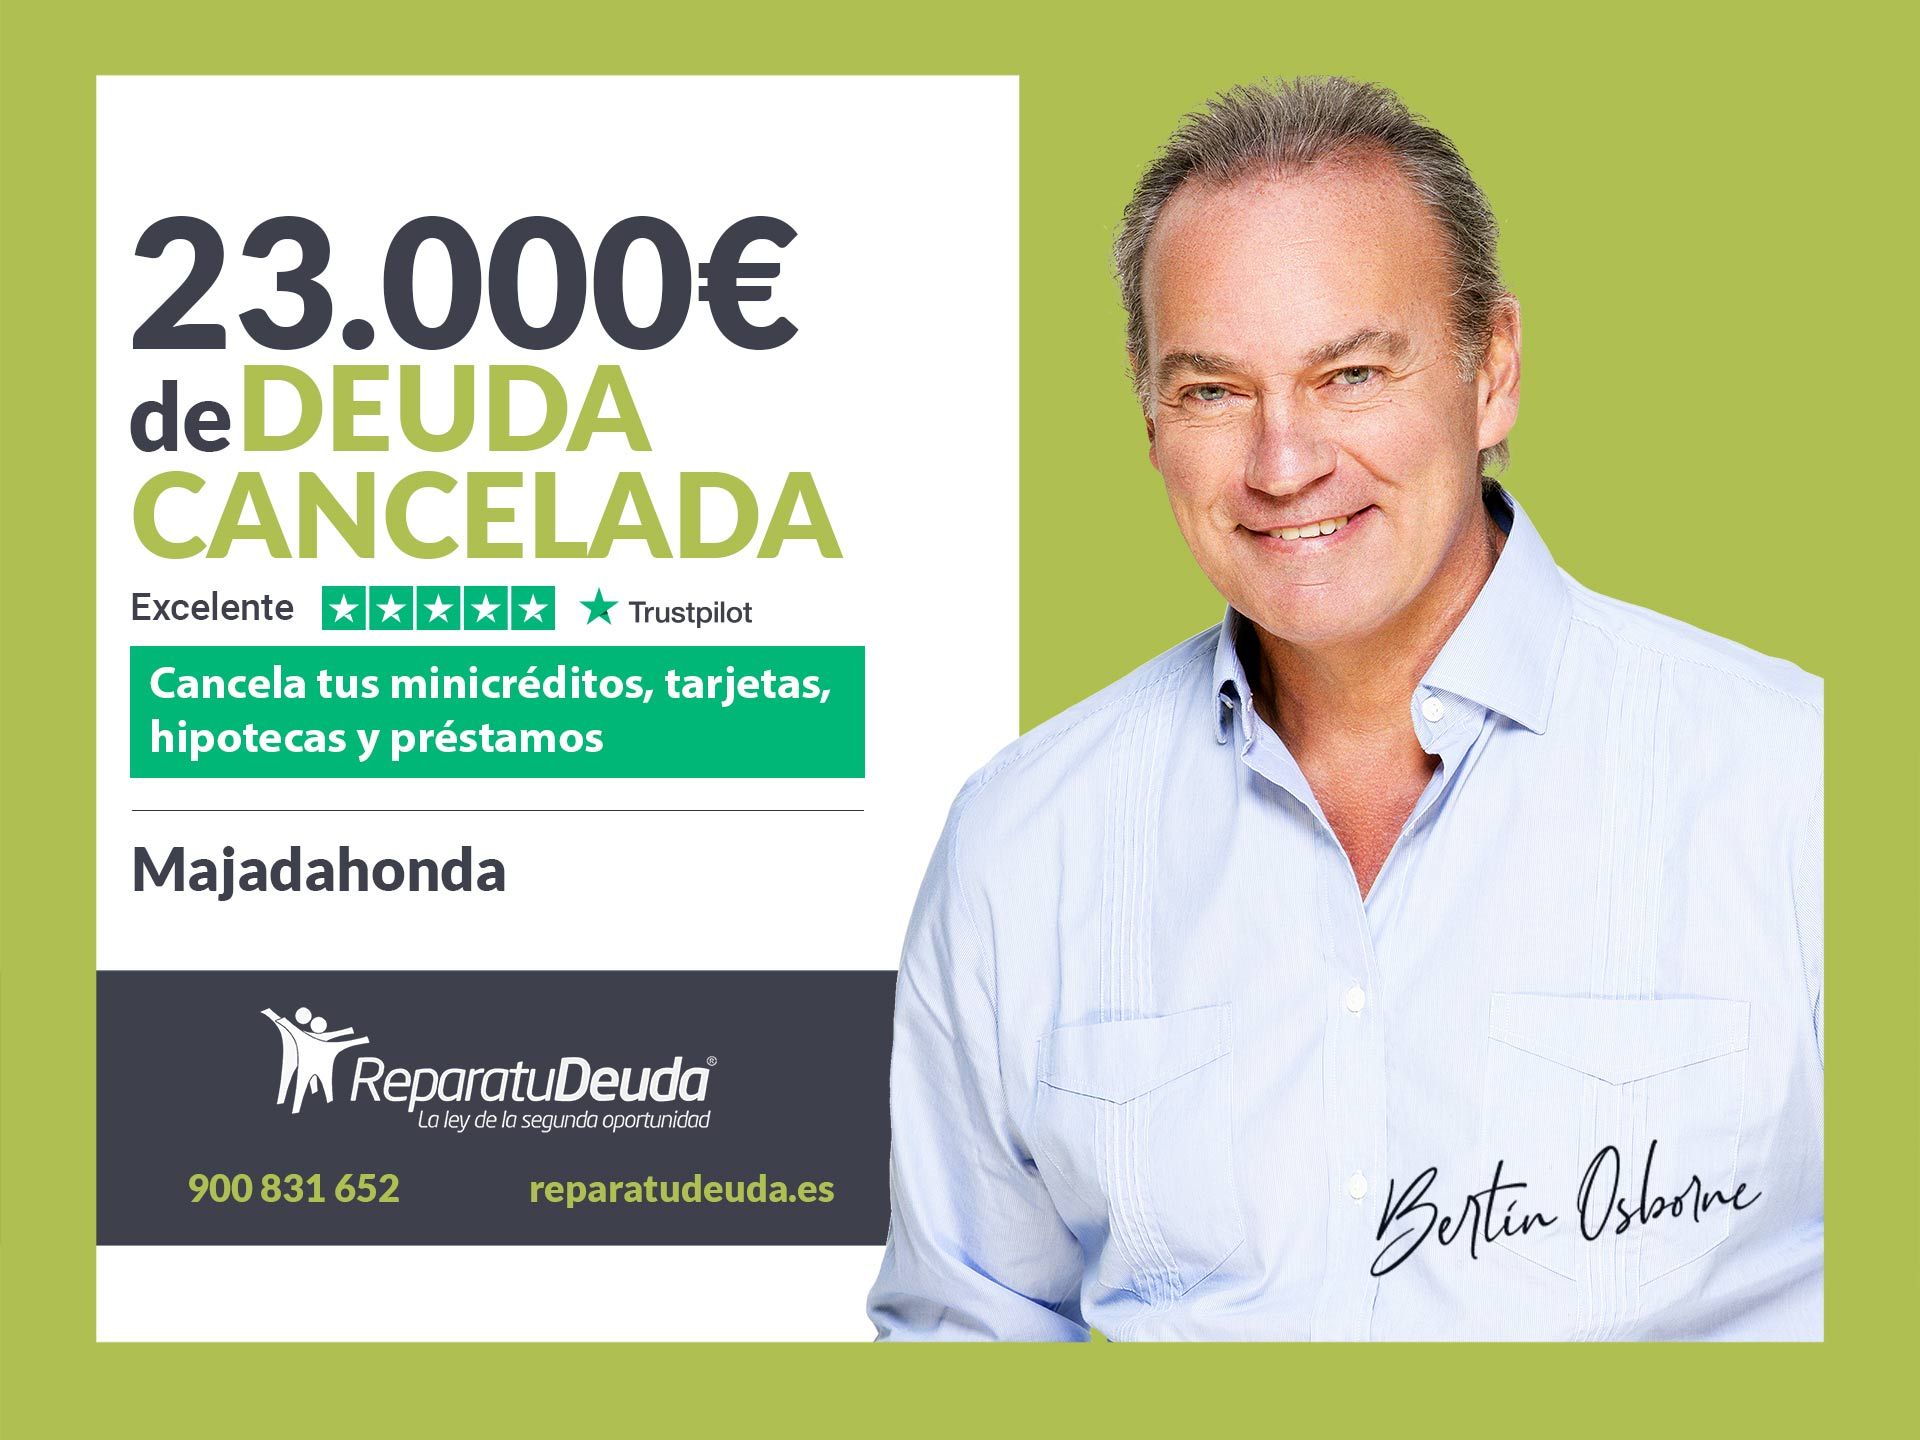 Repara tu Deuda Abogados cancela 23.000? en Majadahonda (Madrid) gracias a la Ley de Segunda Oportunidad